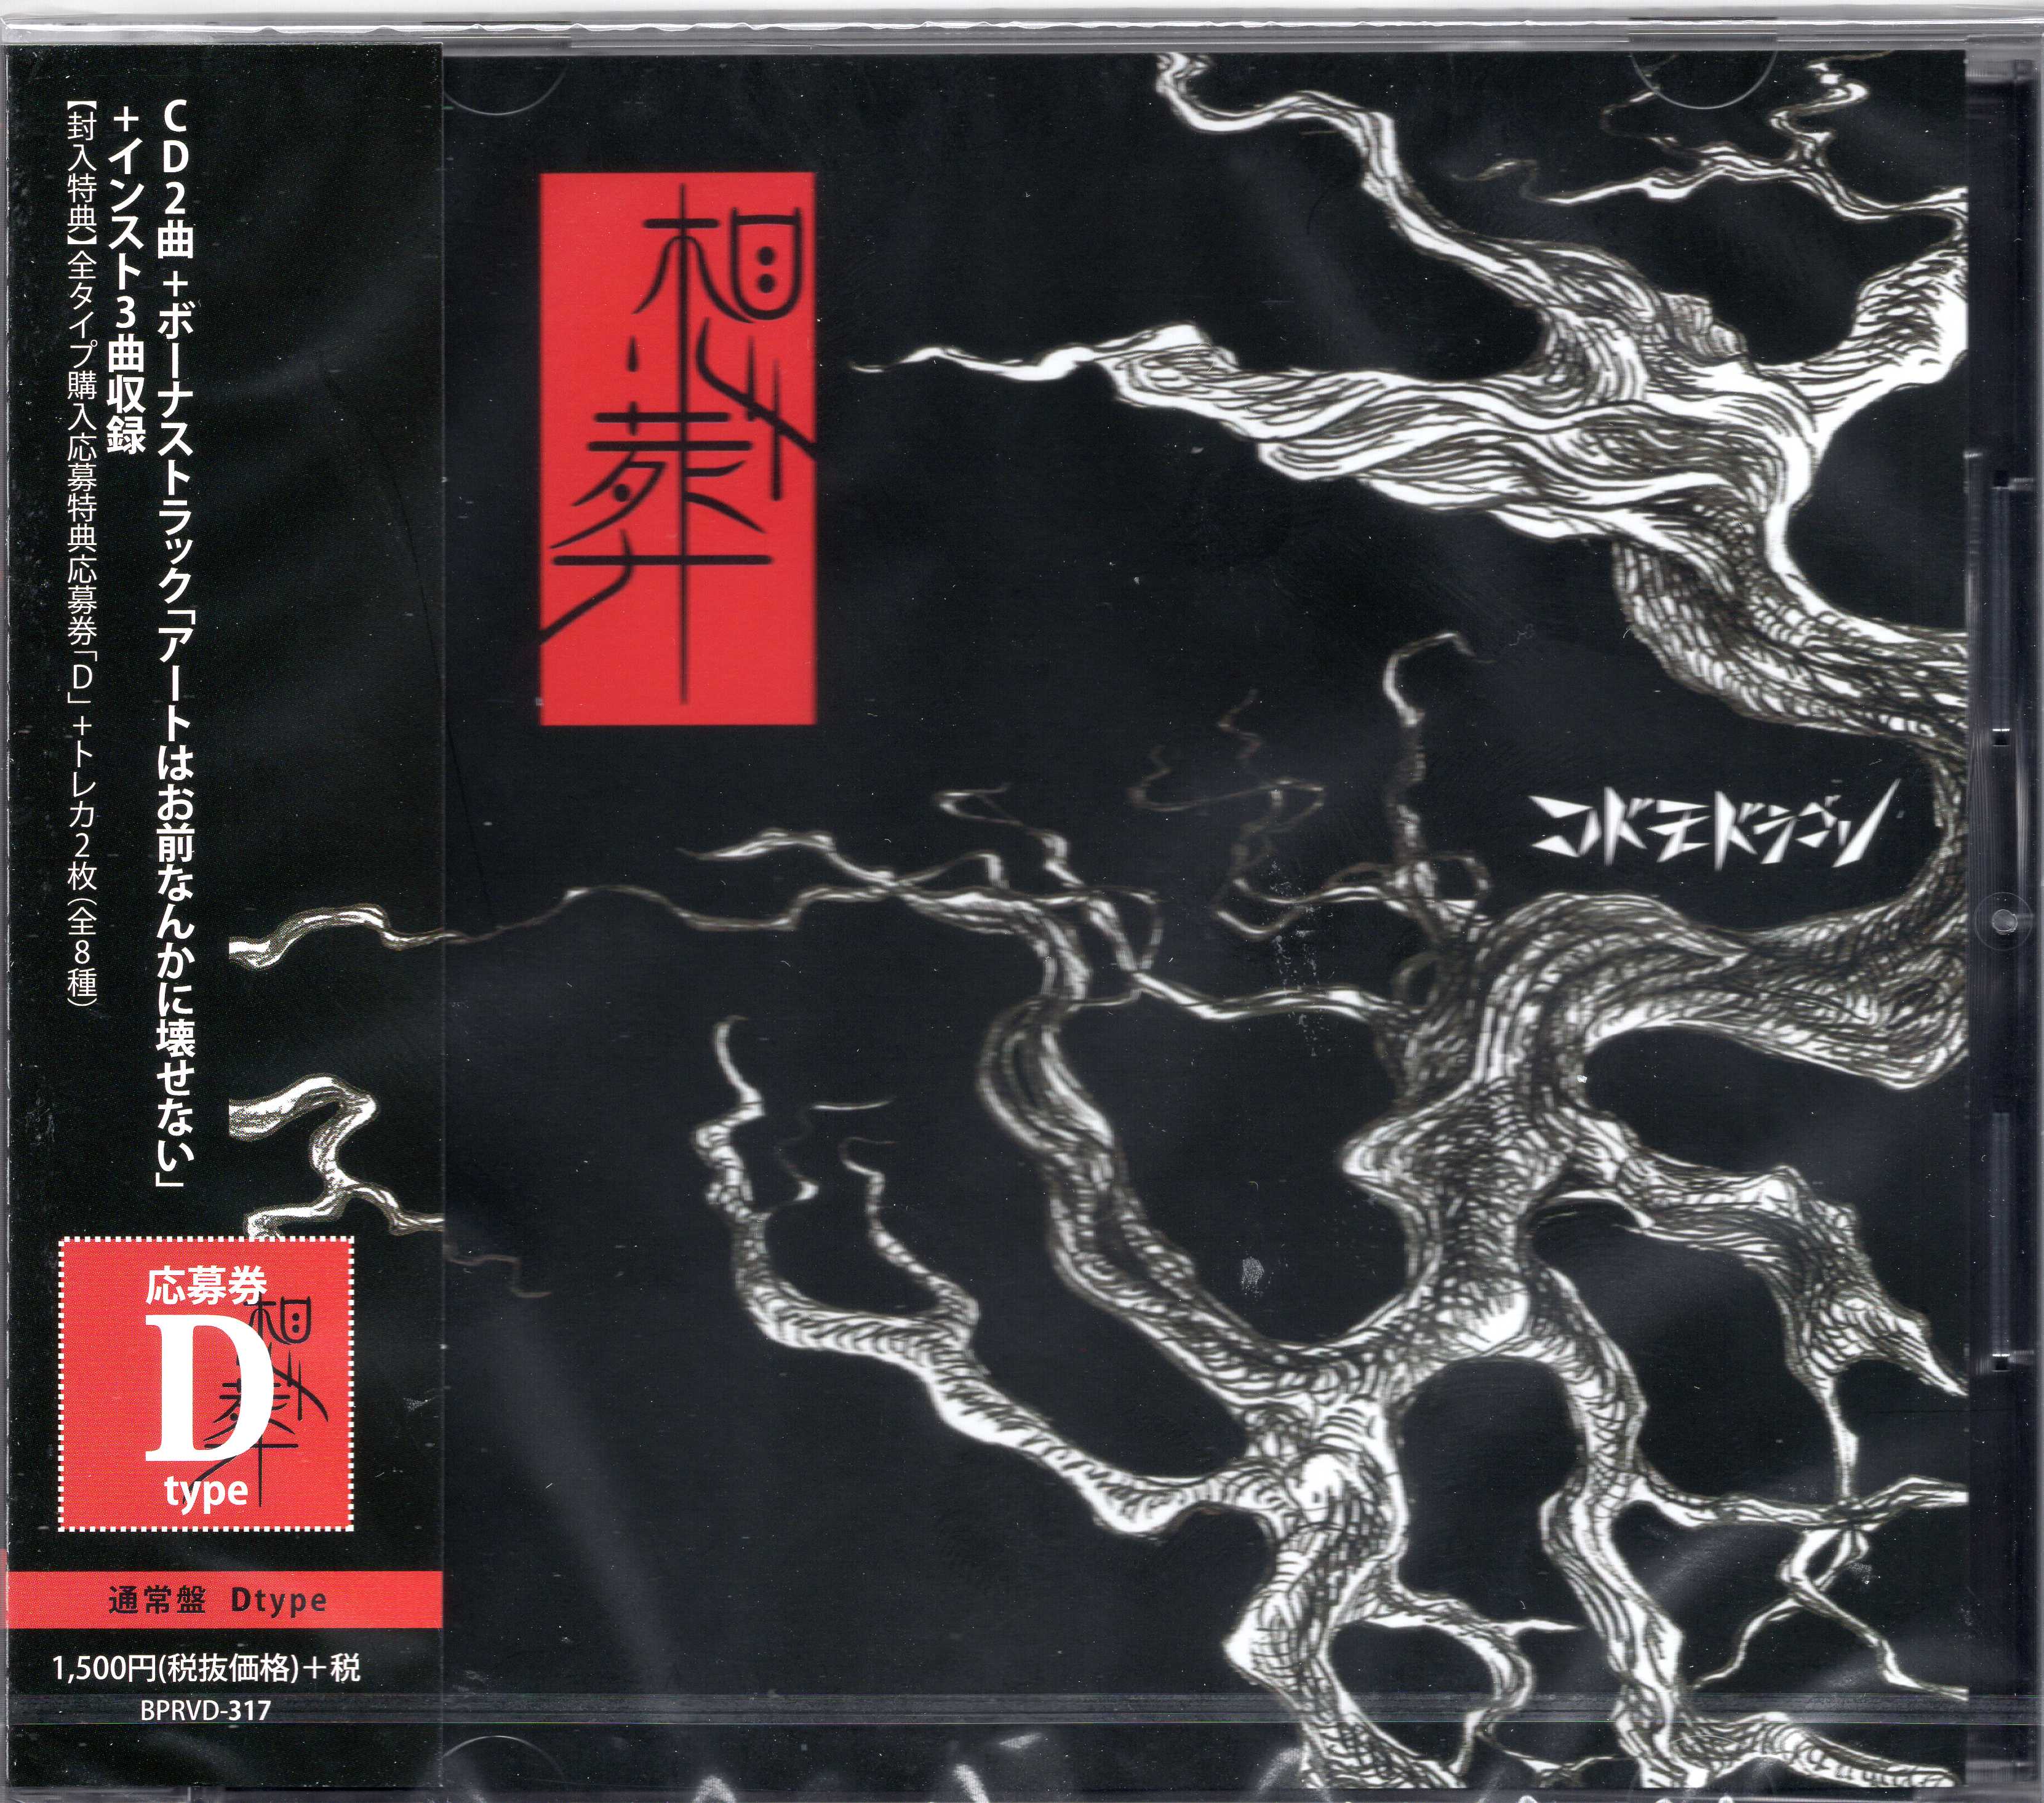 コドモドラゴン ( コドモドラゴン )  の CD 【通常盤D】想葬